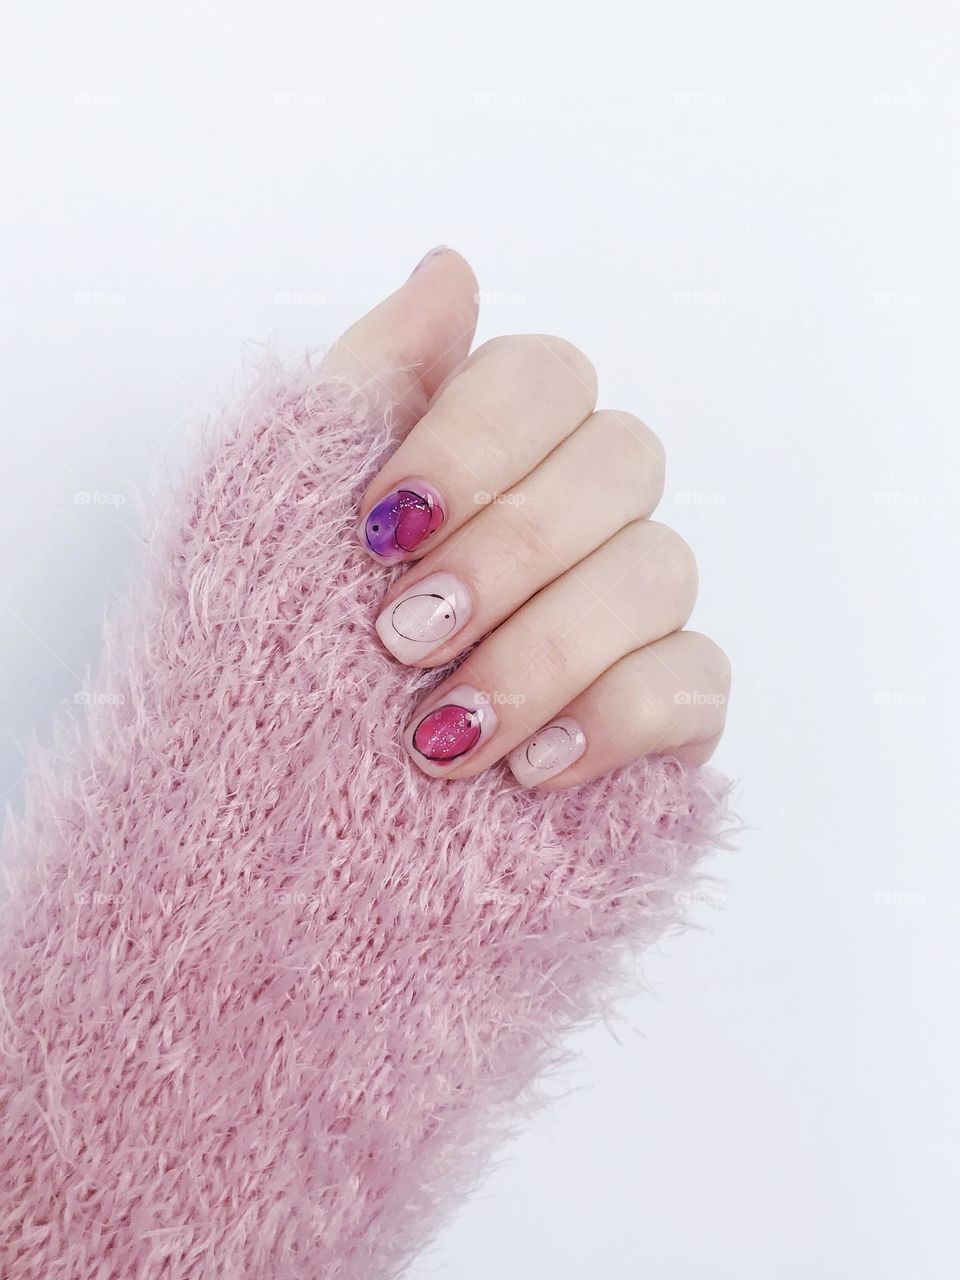 Manicure. Beautiful nails